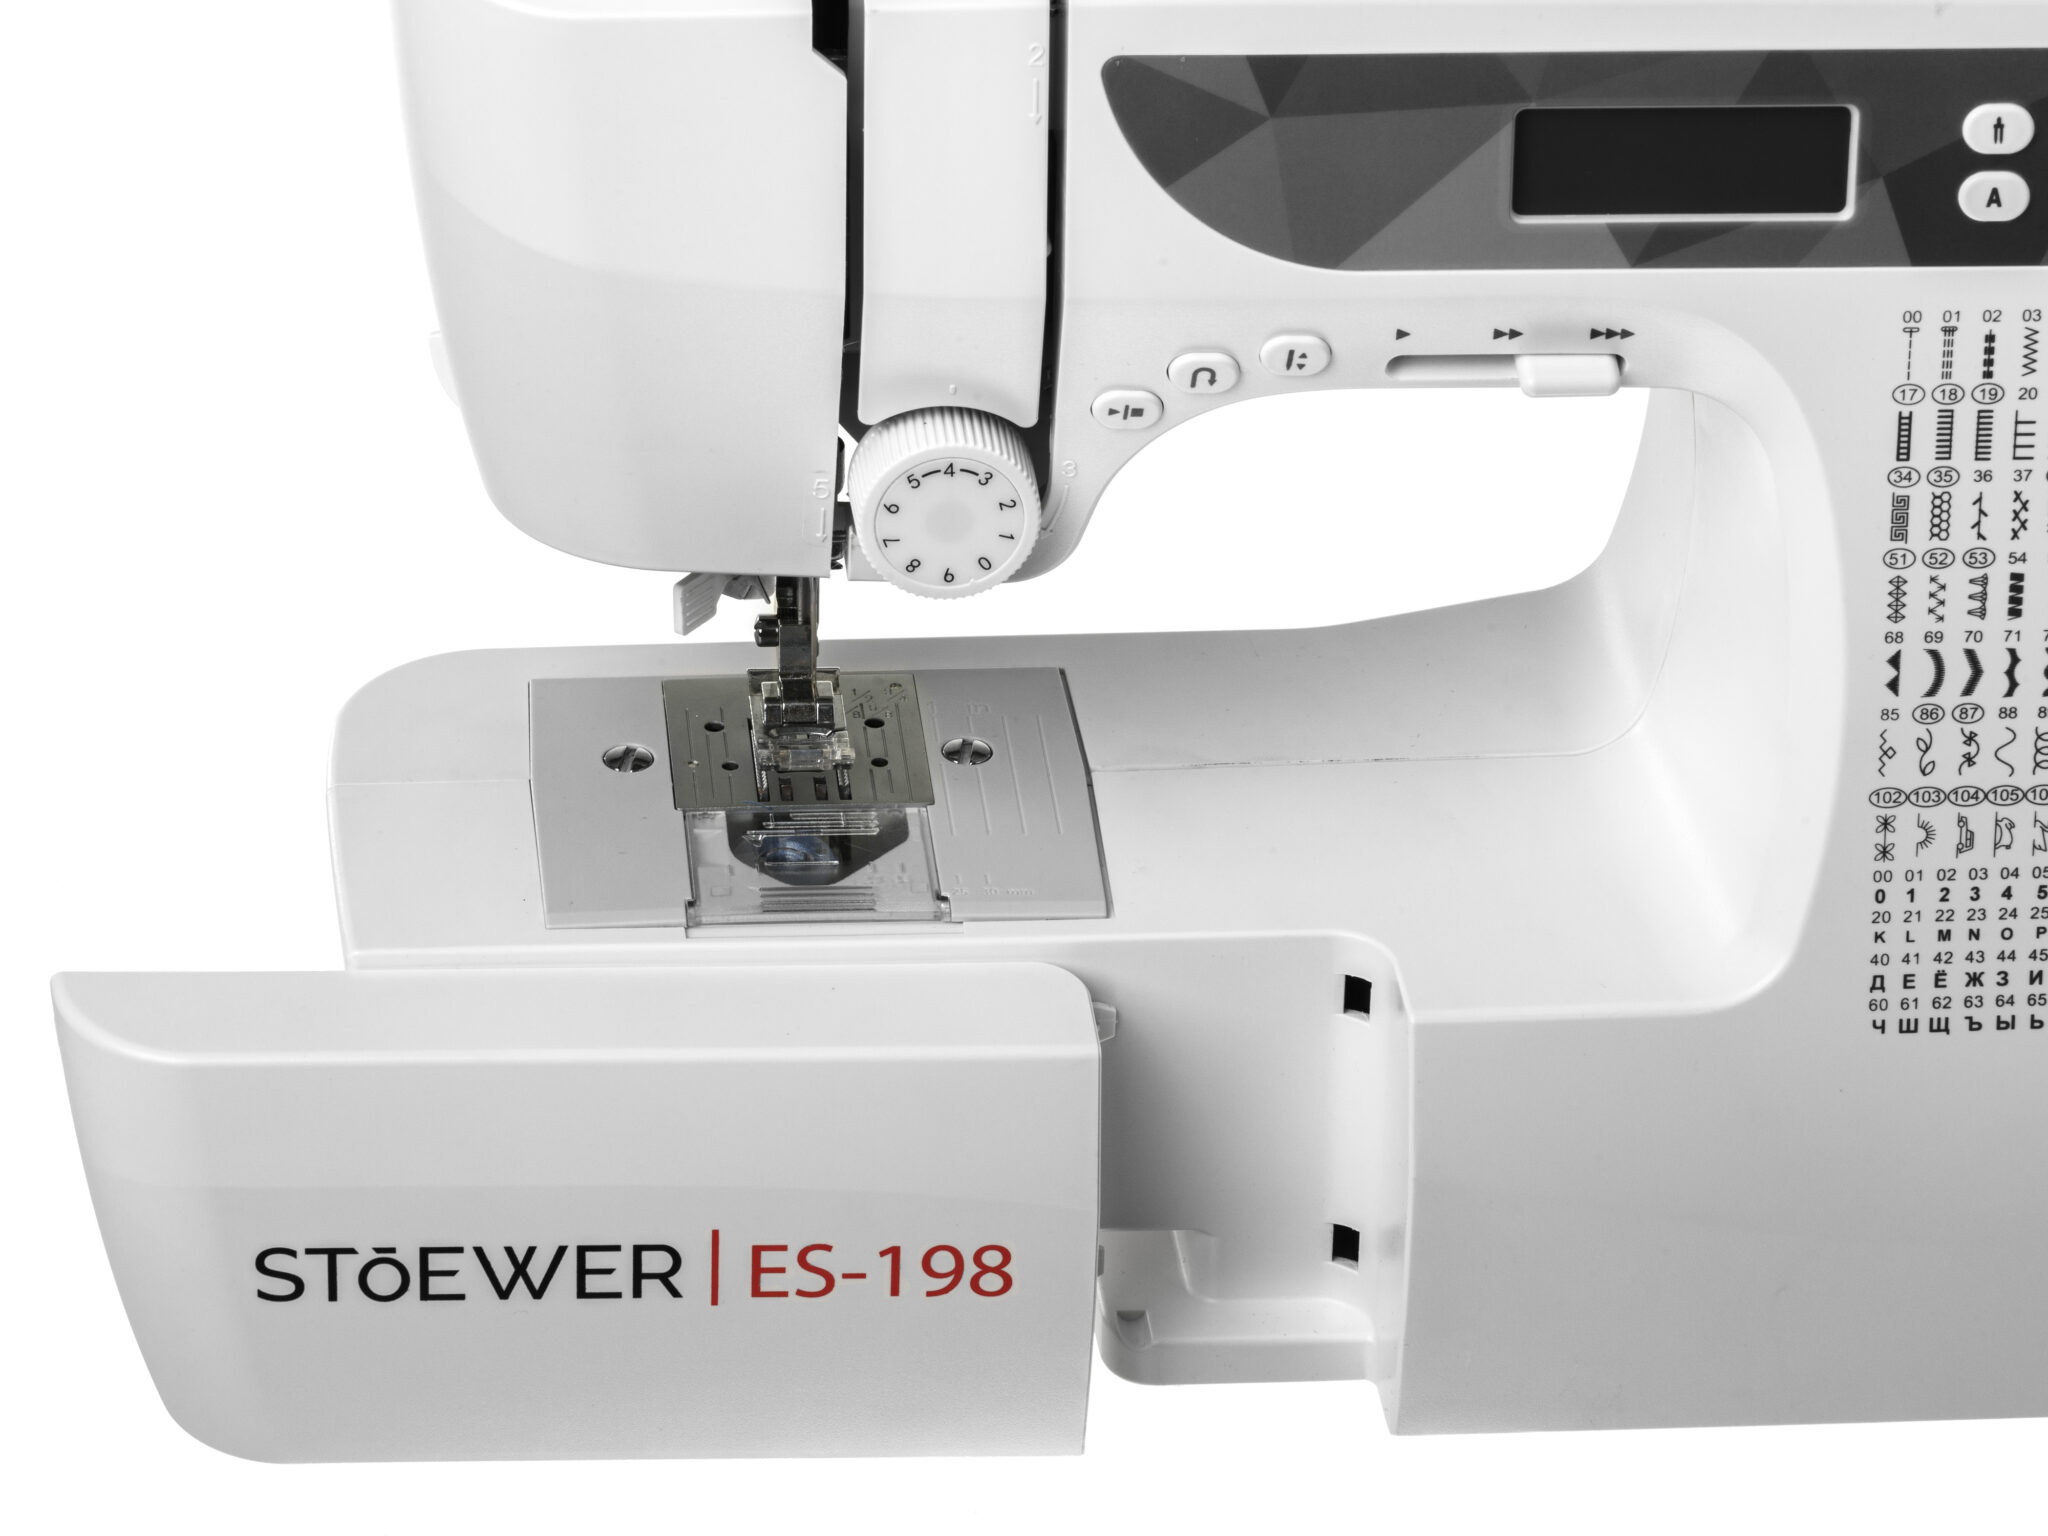 Stoewer es 198. Stoewer es-198 швейная машина.